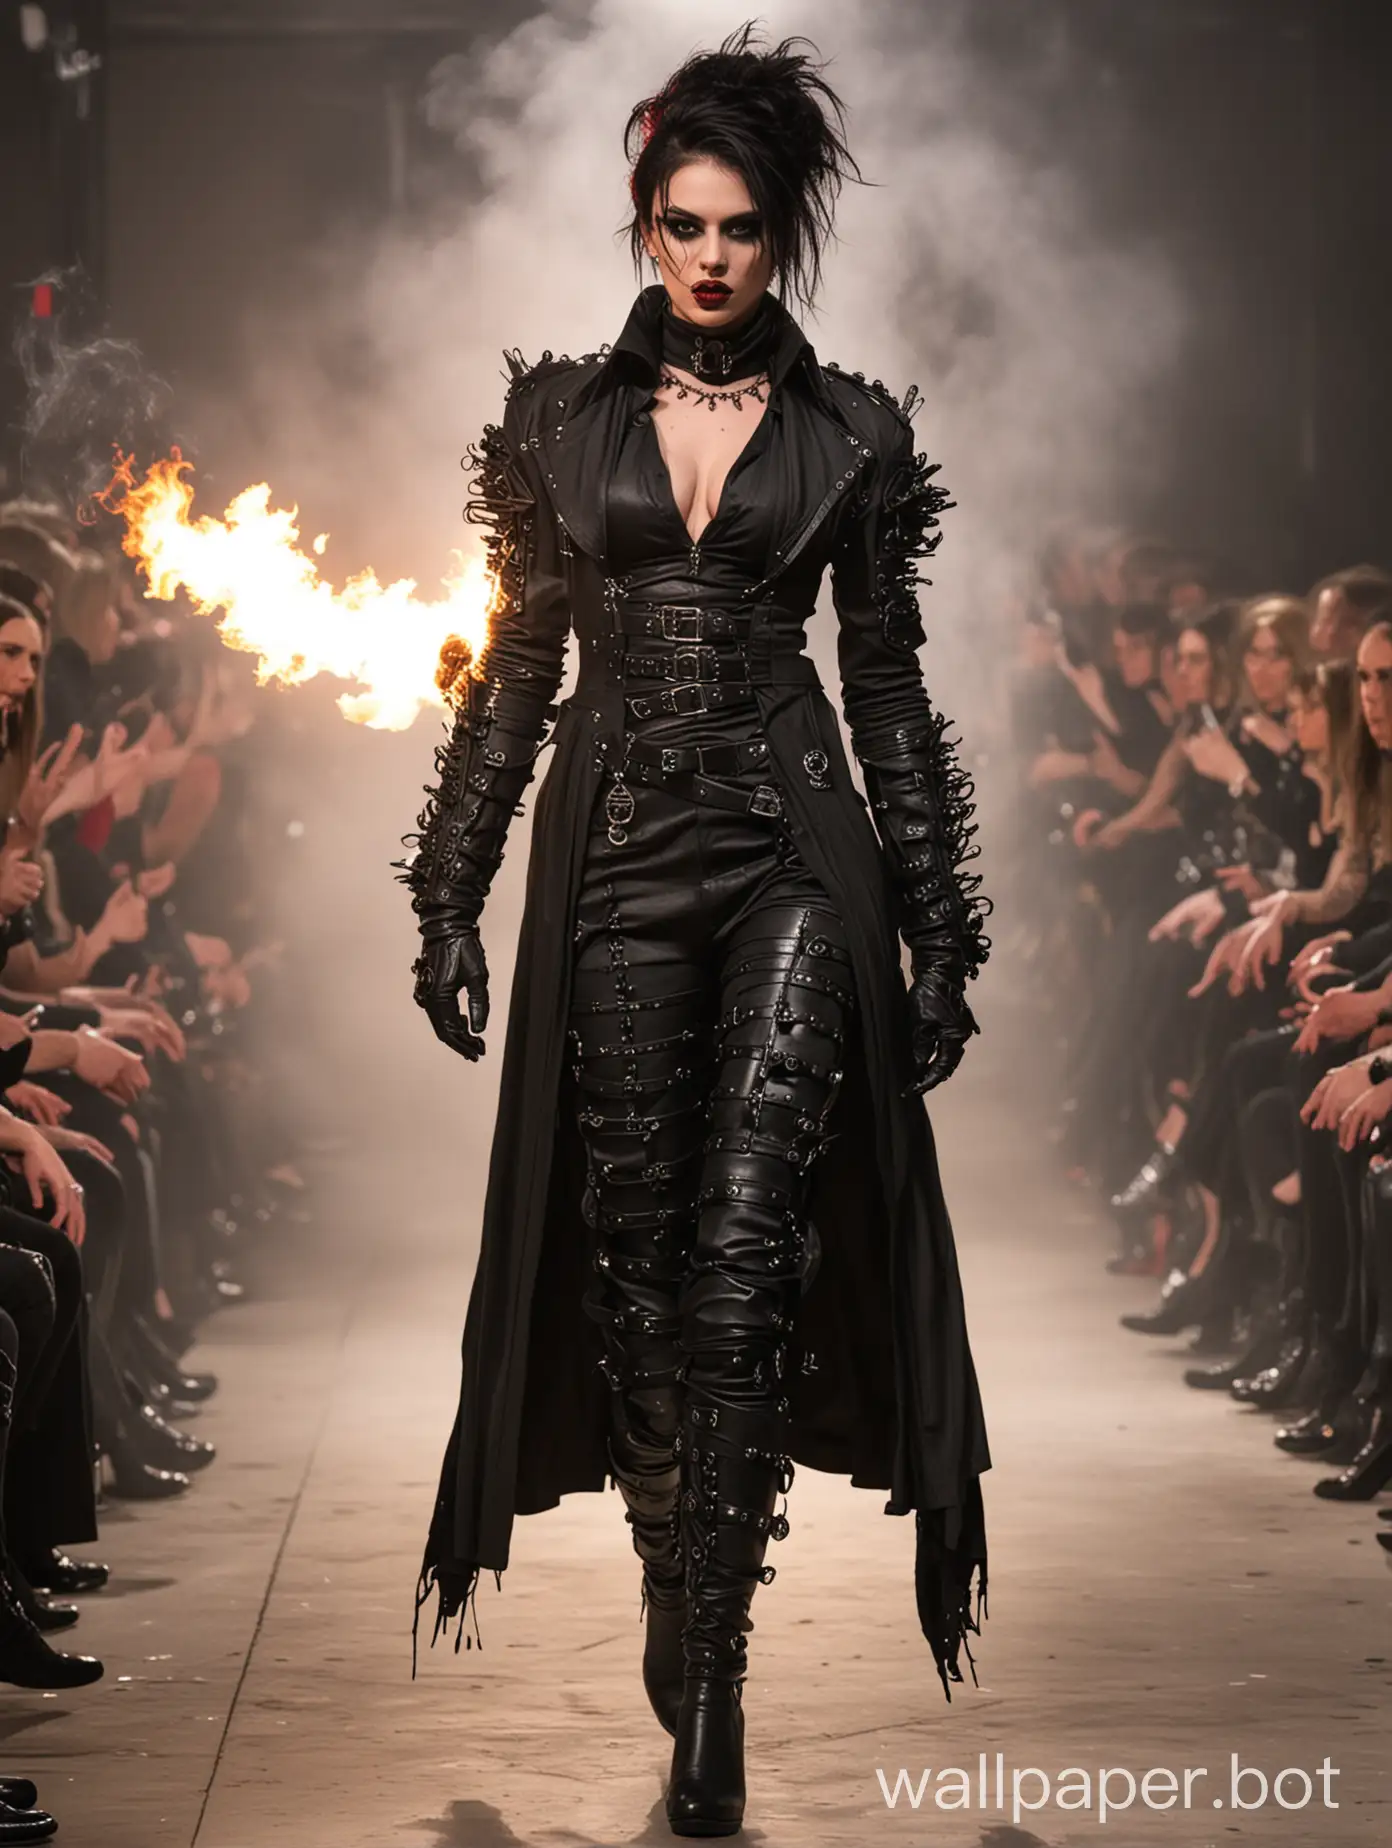 Sassy Attila stunning art Goth fashion show, flamethrower